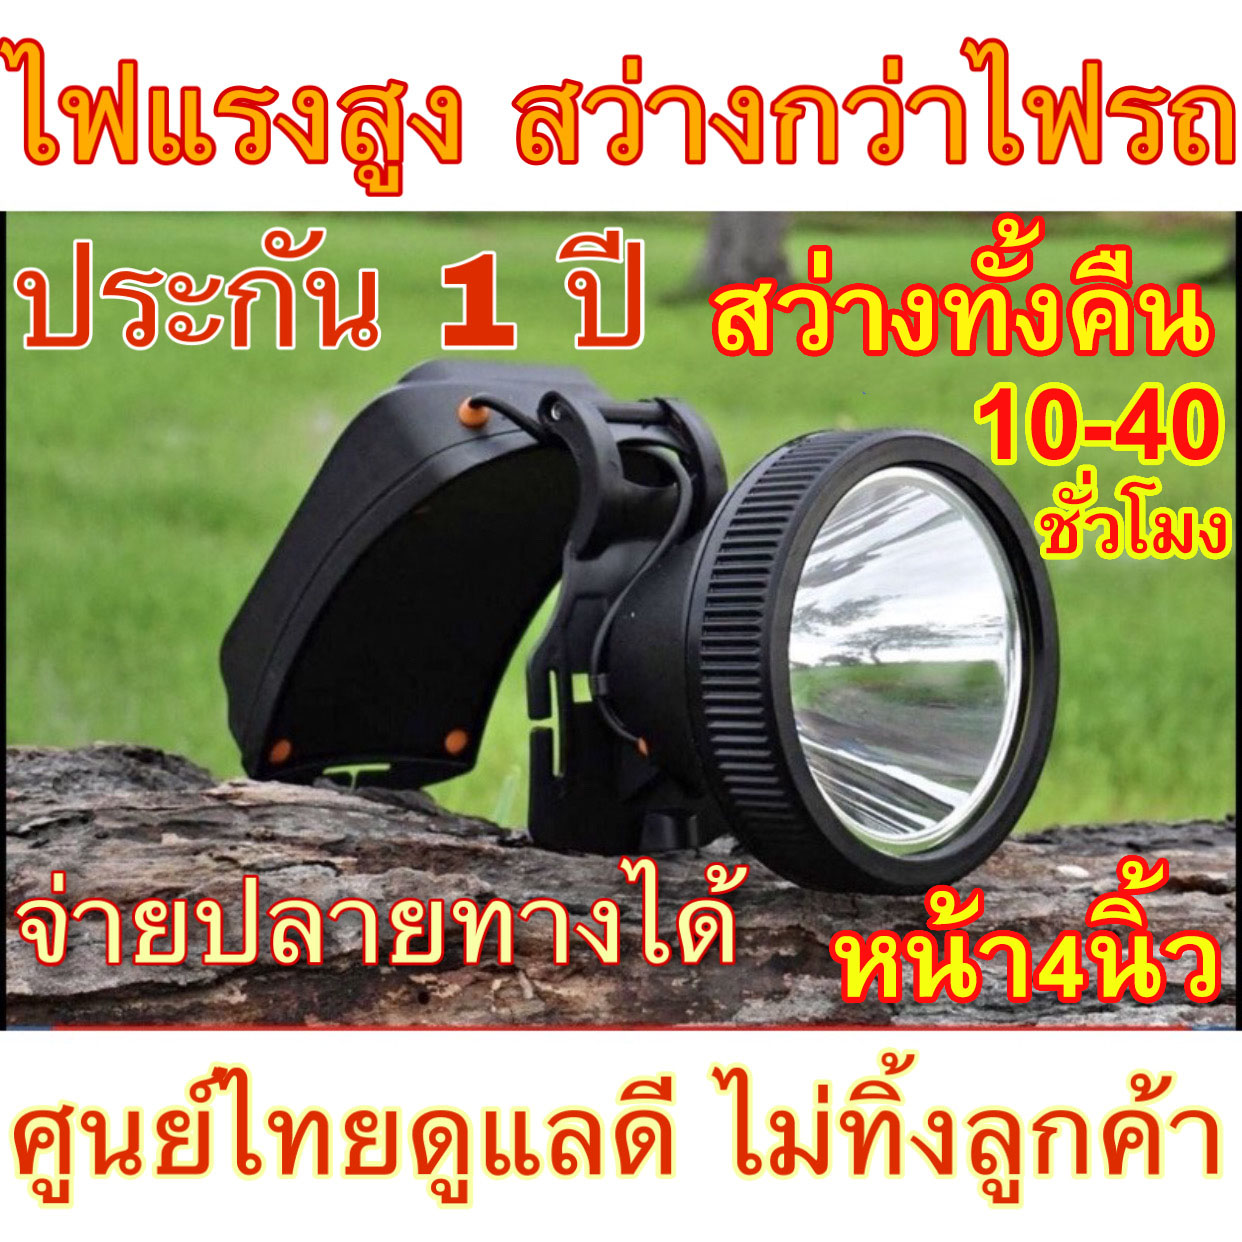 (ประกัน 1 ปี) สว่างที่สุดในไทย ไฟคาดหัวแรงสูง Led 1000เมตร หน้าใหญ่ 4นิ้ว แบตทนข้ามคืน  หัวไฟ ส่องกบ กรีดยาง  สัตว์ ช้างกันฝน 200000w Brown th store